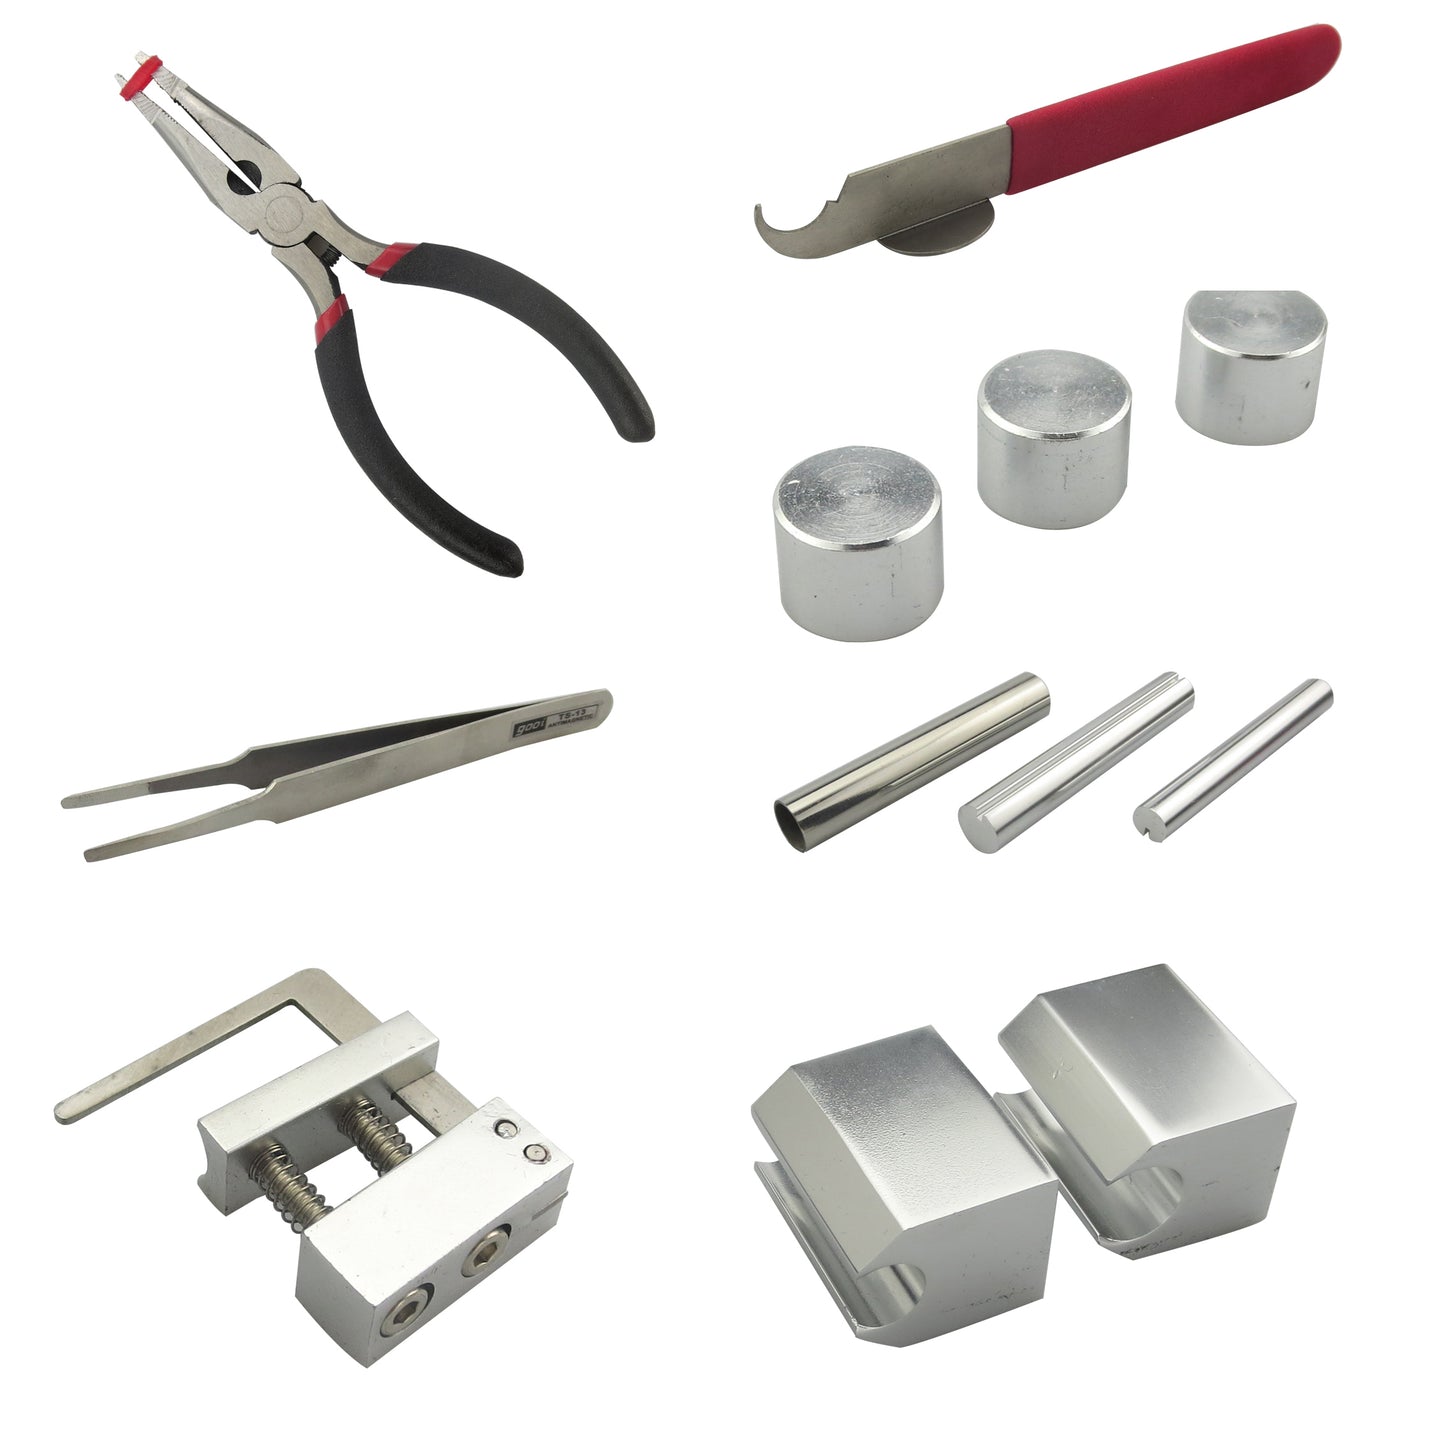 Original HUK Professional 12 in 1 HUK Lock Disassembly Tool Locksmith Tools Kit Remove Lock Repairing Pick Set Lock Repair Tool Kit